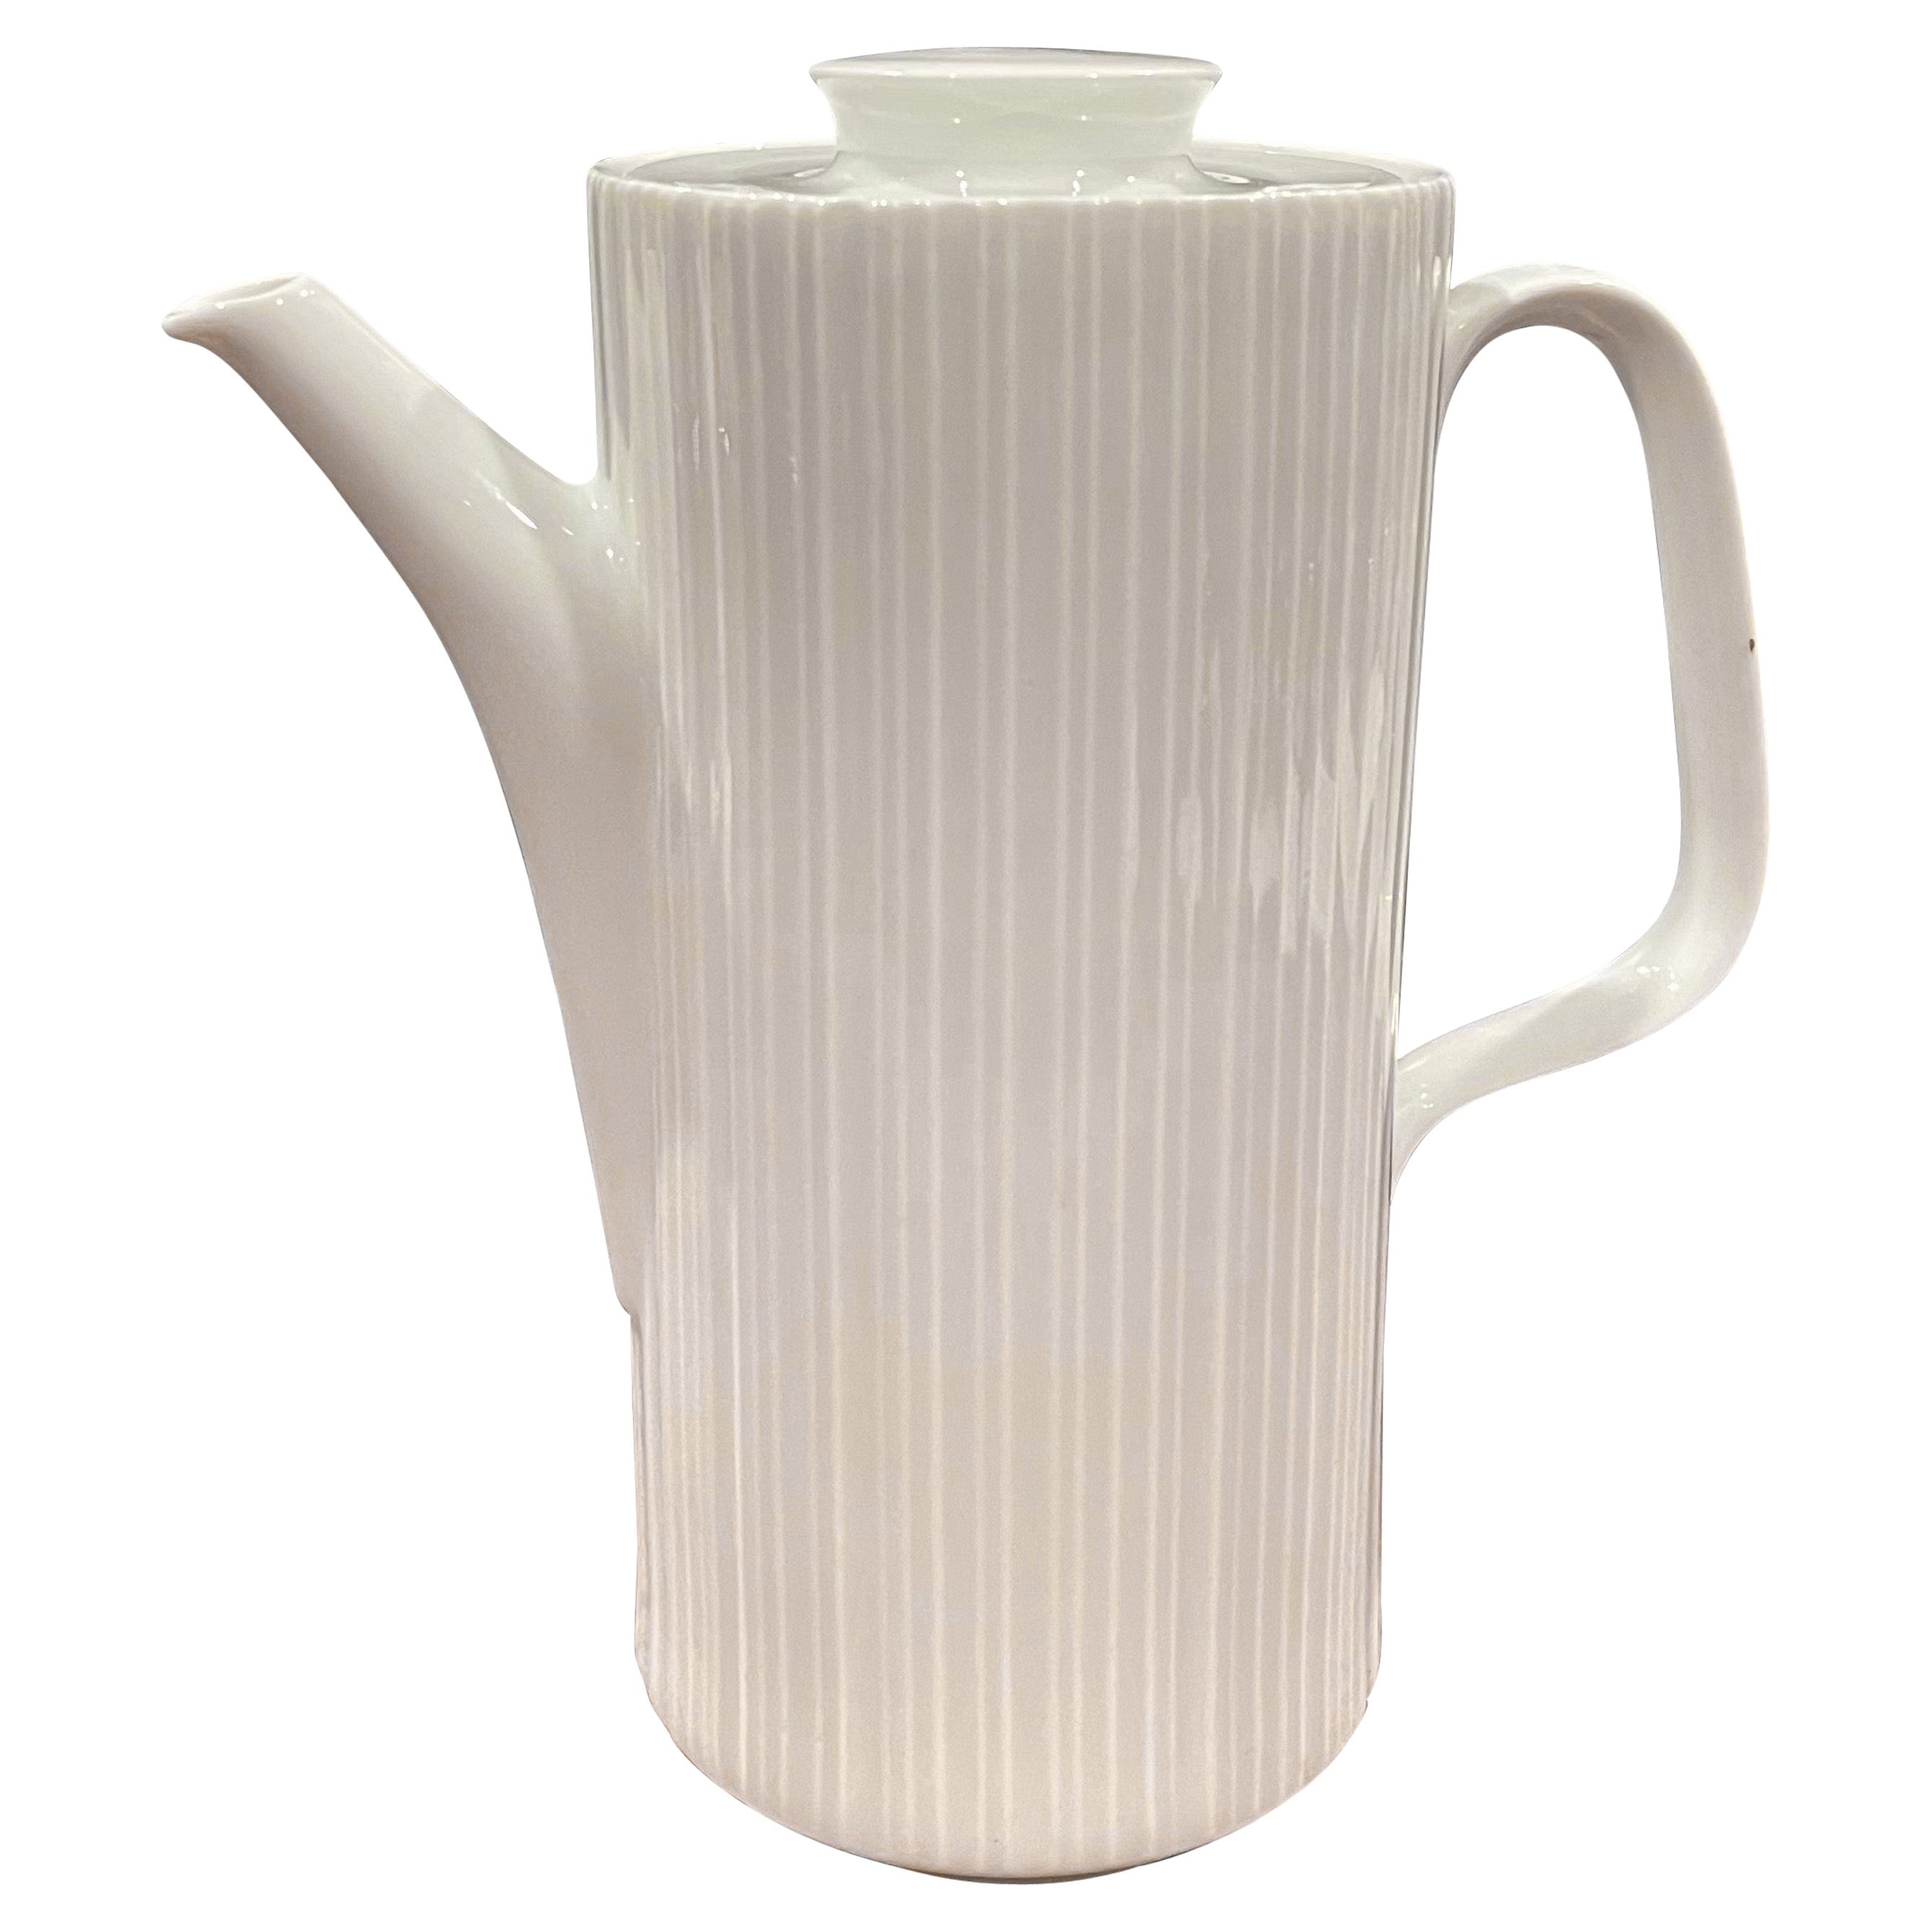 "Studio Line" White Porcelain Tea Pot by Tapio Wirkkala for Rosenthal